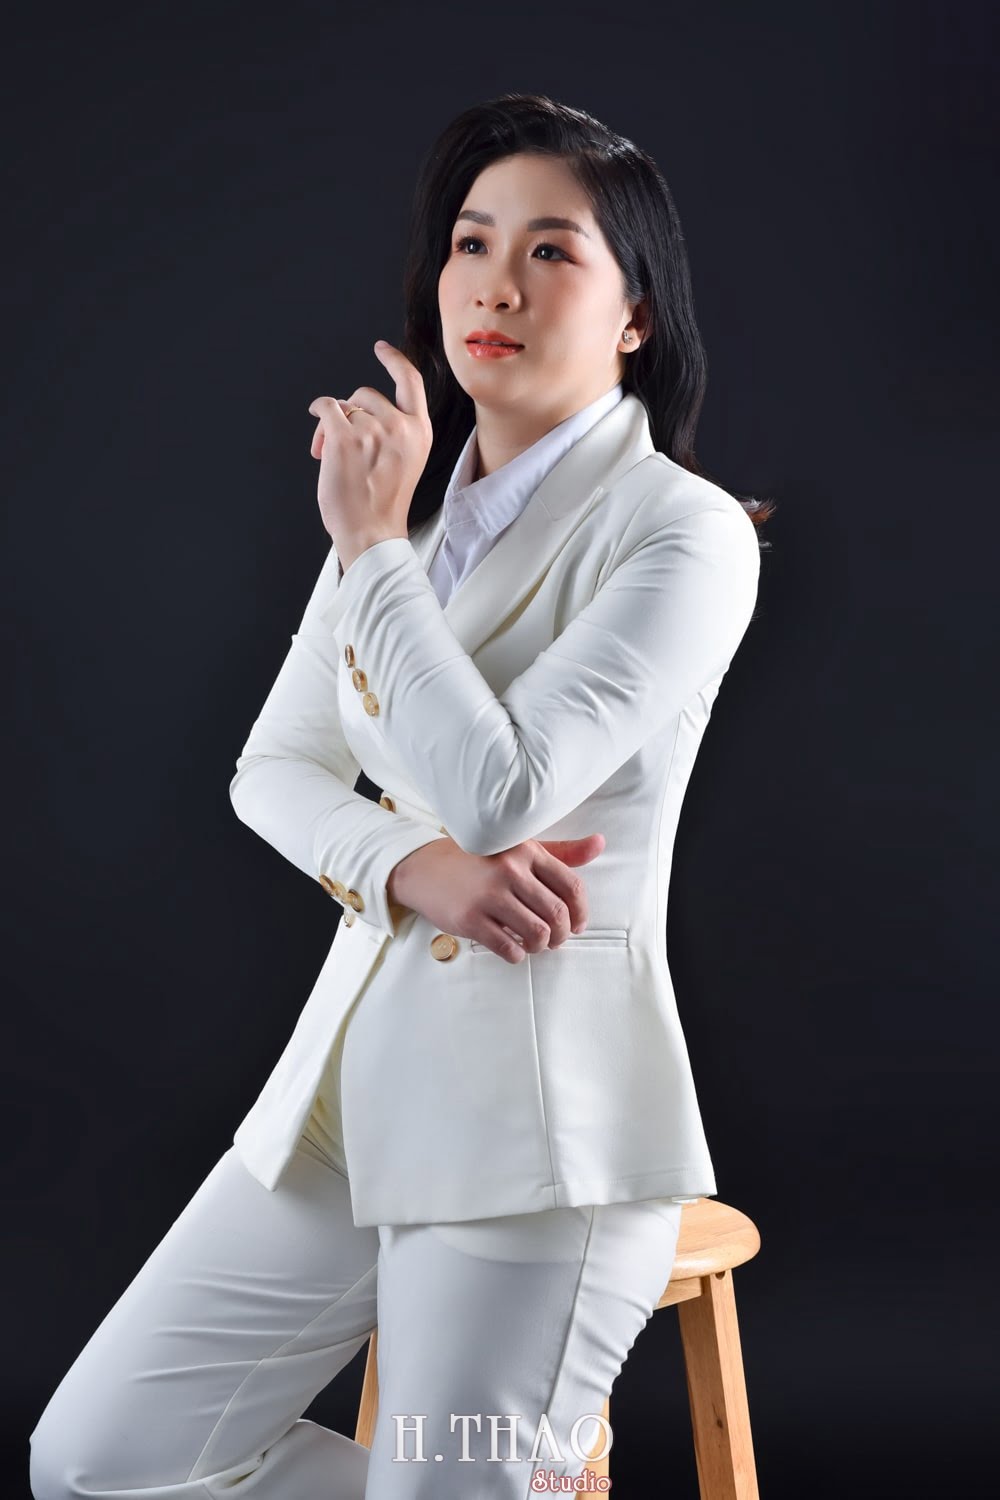 Anh doanh nhan nu 2 min - Cách chụp ảnh nghệ thuật cá tính cho nam & nữ - HThao Studio